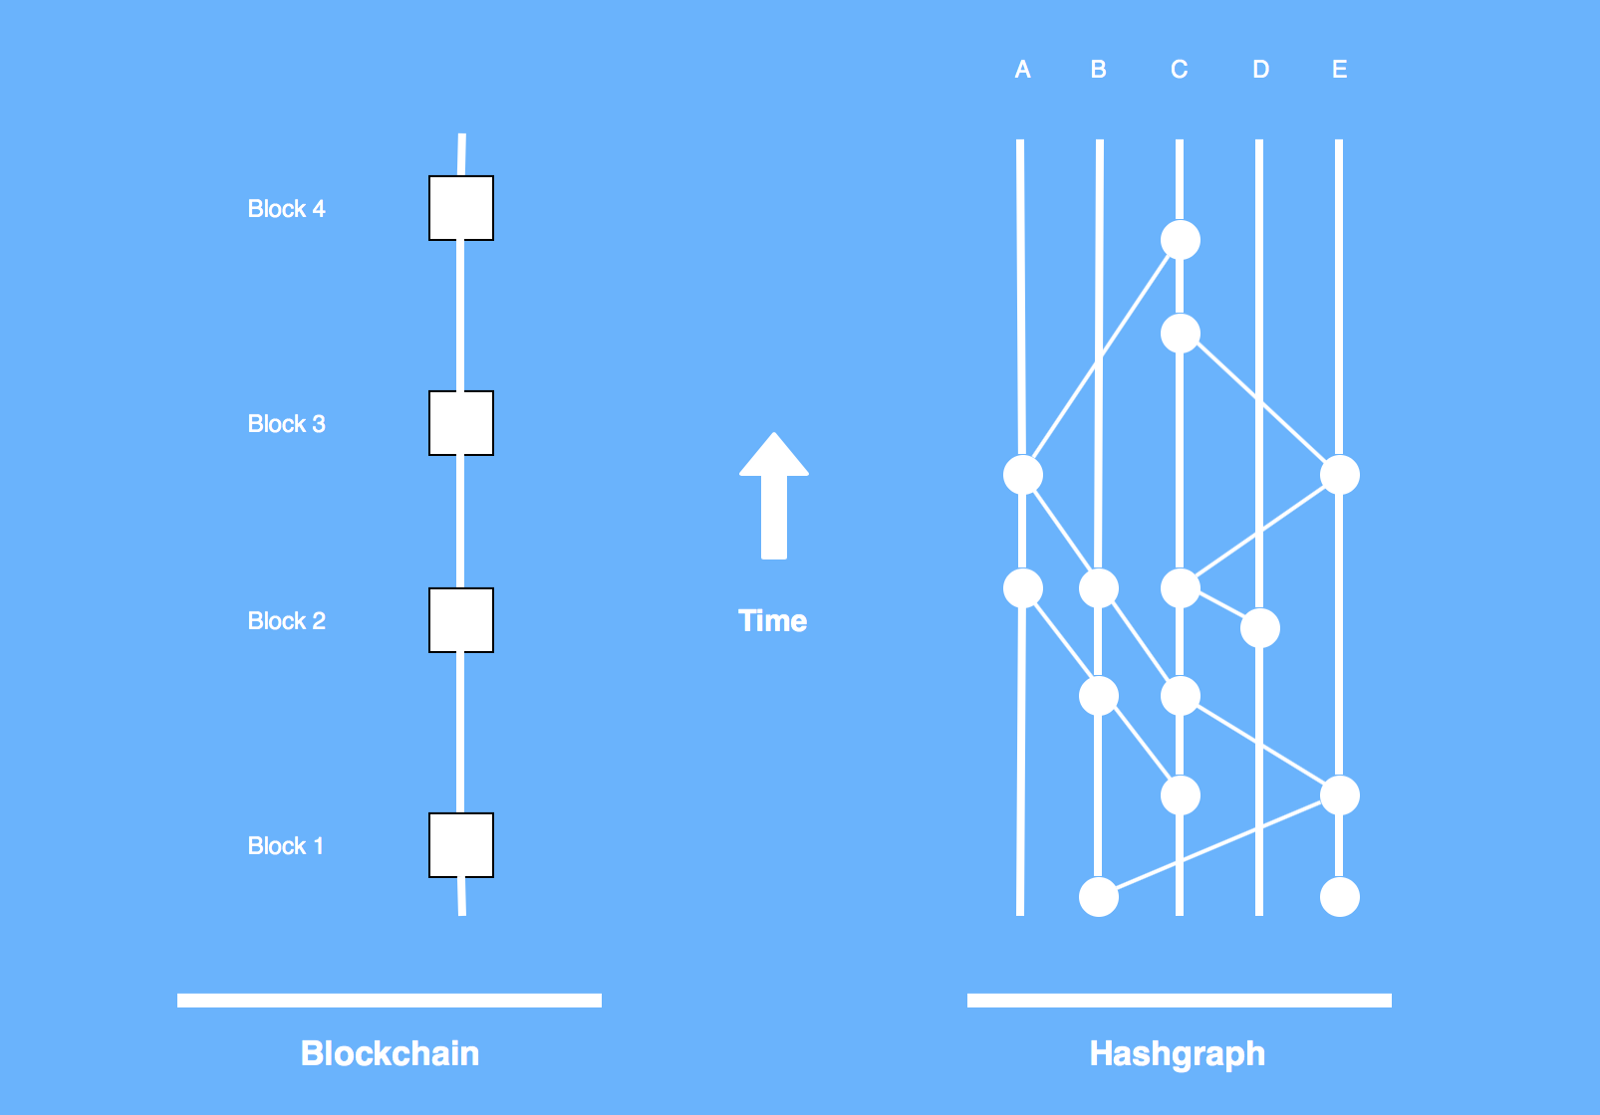 Blockchain vs Hashgraph